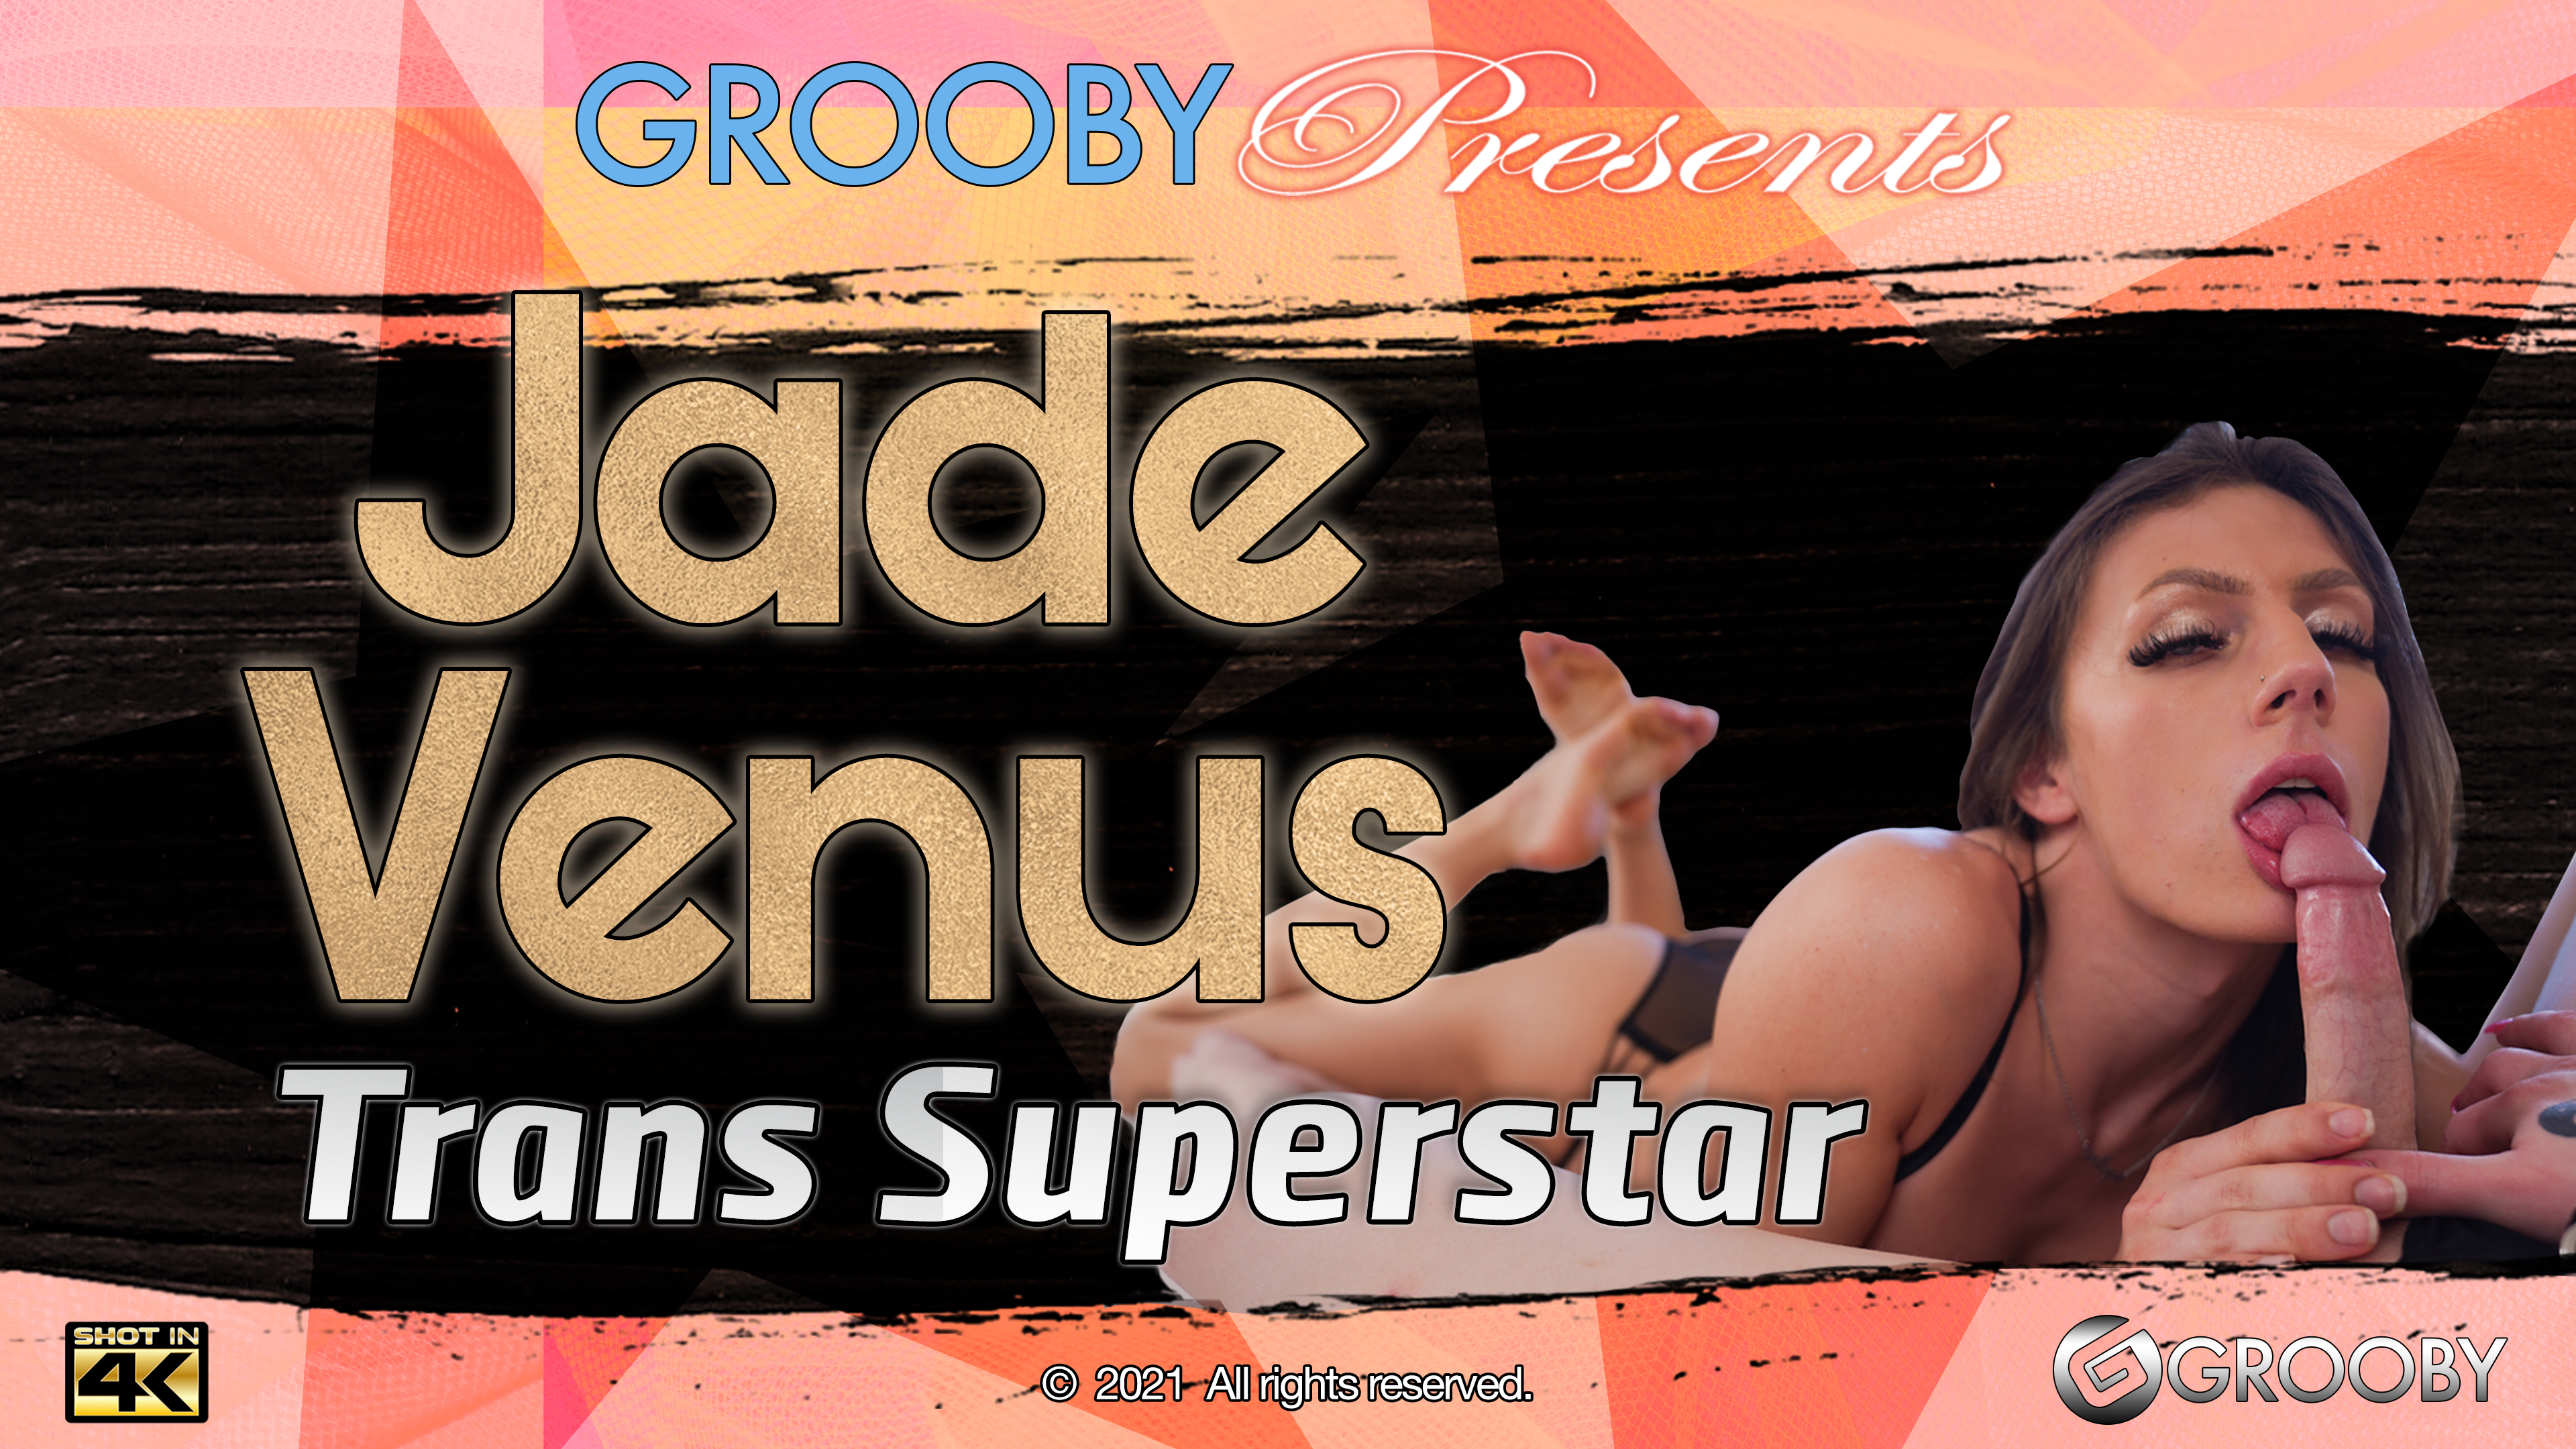 Jade Venus: Trans Superstar DVD Trailer